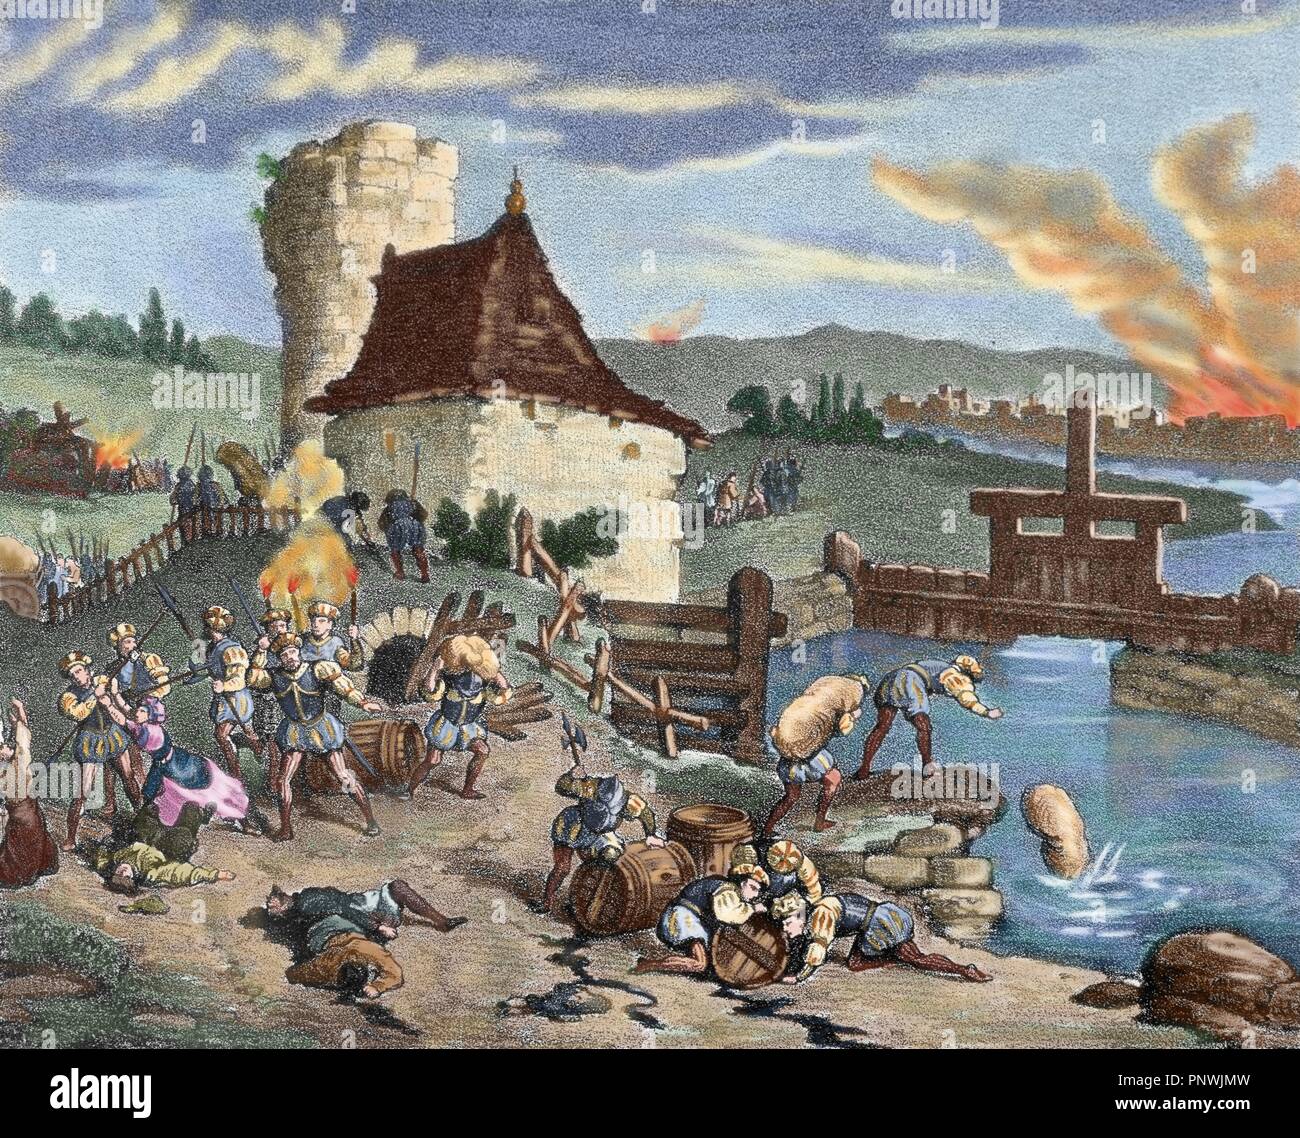 Il tedesco guerra dei contadini (1524-1525). Incendi e saccheggi da parte del riformatore tedesco, Thomas Muntzer (1491-1525) e il suo popolo durante la ribellione. Incisione colorata. Xix secolo. Foto Stock